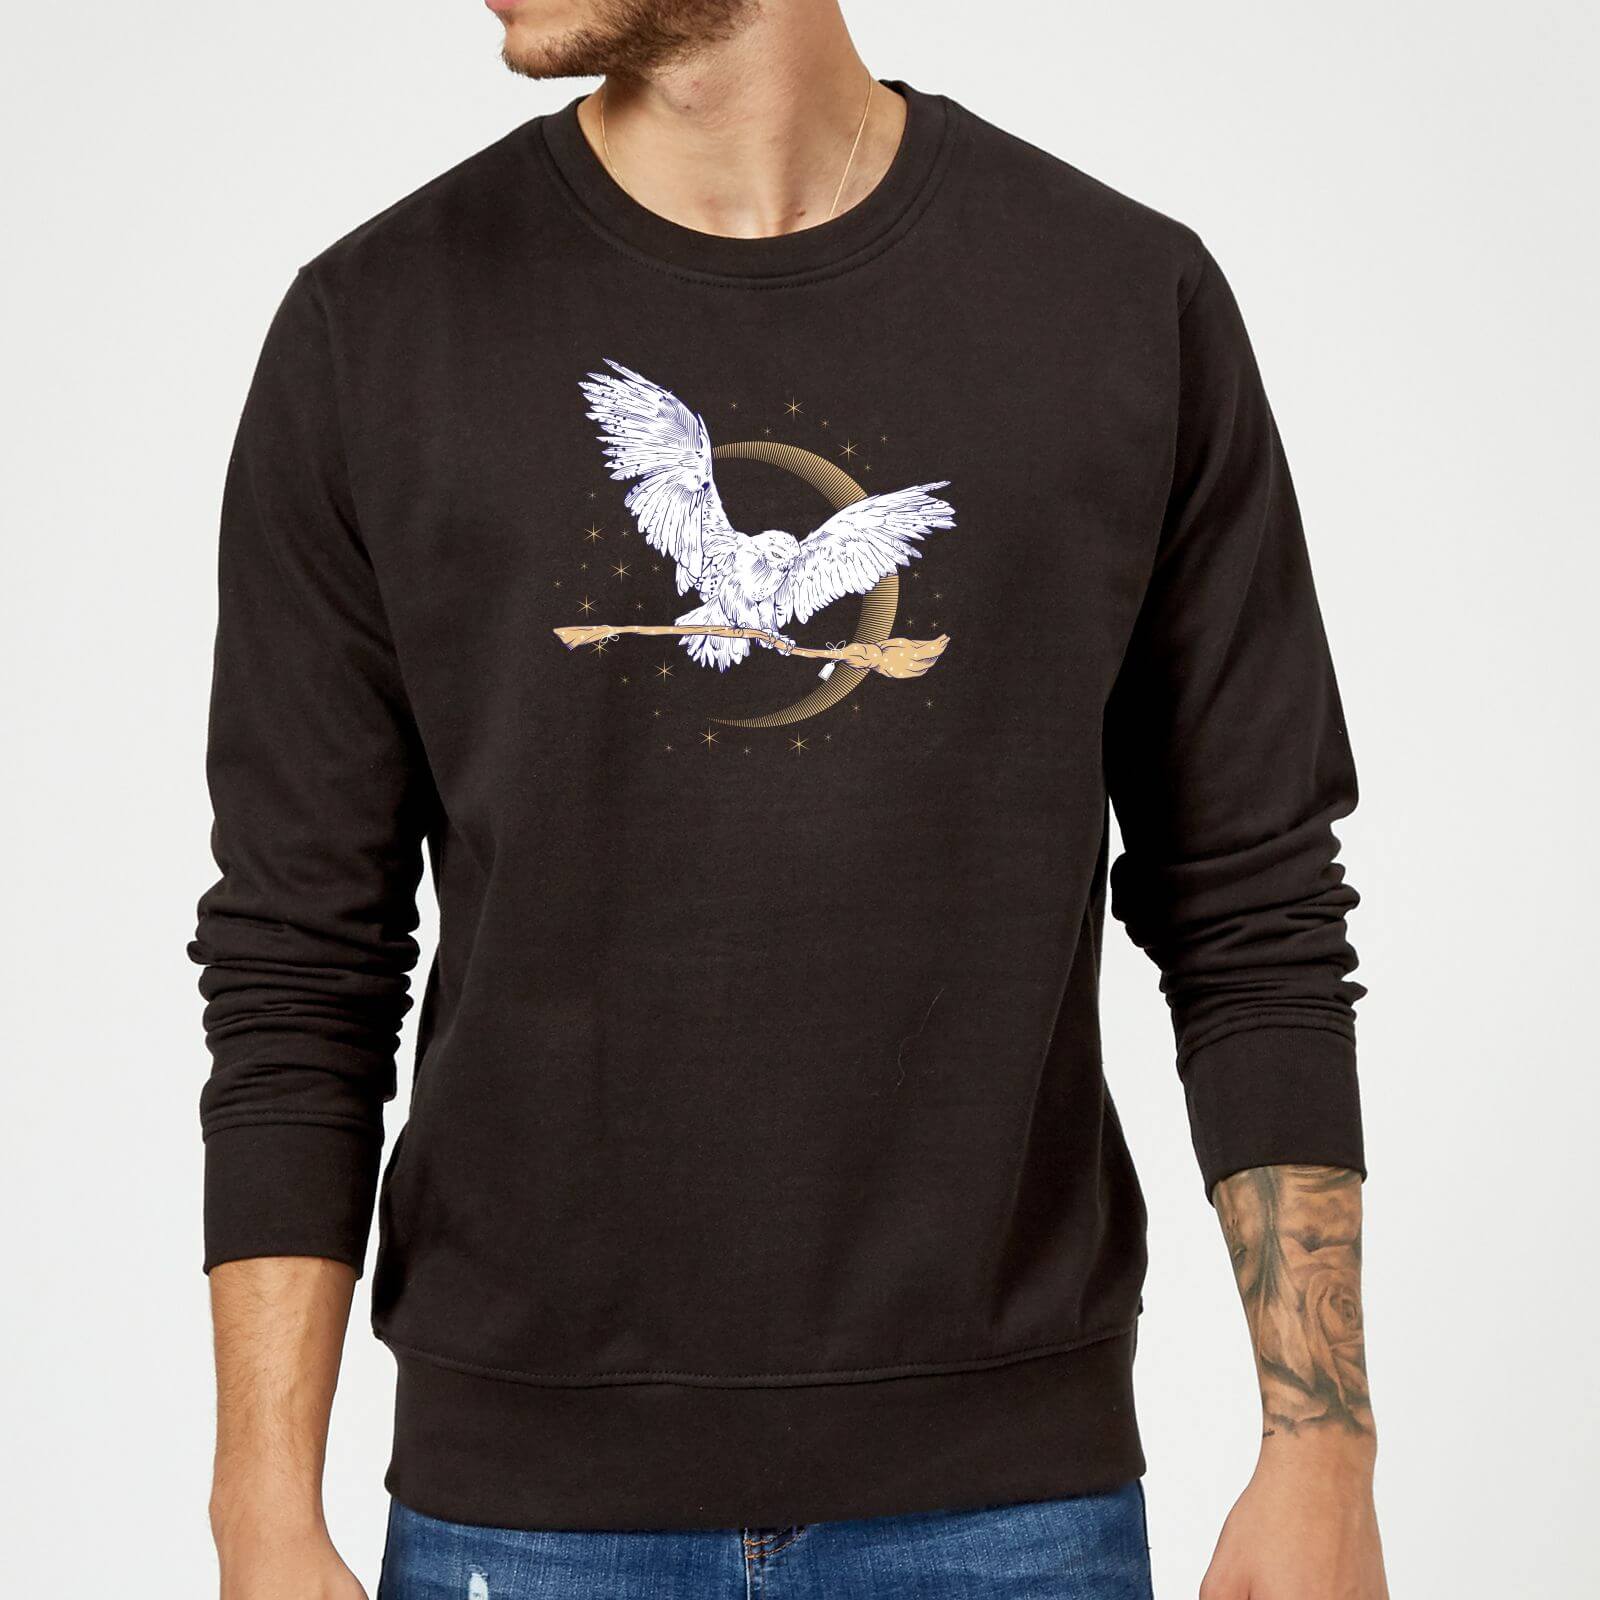 Harry Potter Hedwig Broom Sweatshirt - Black - S